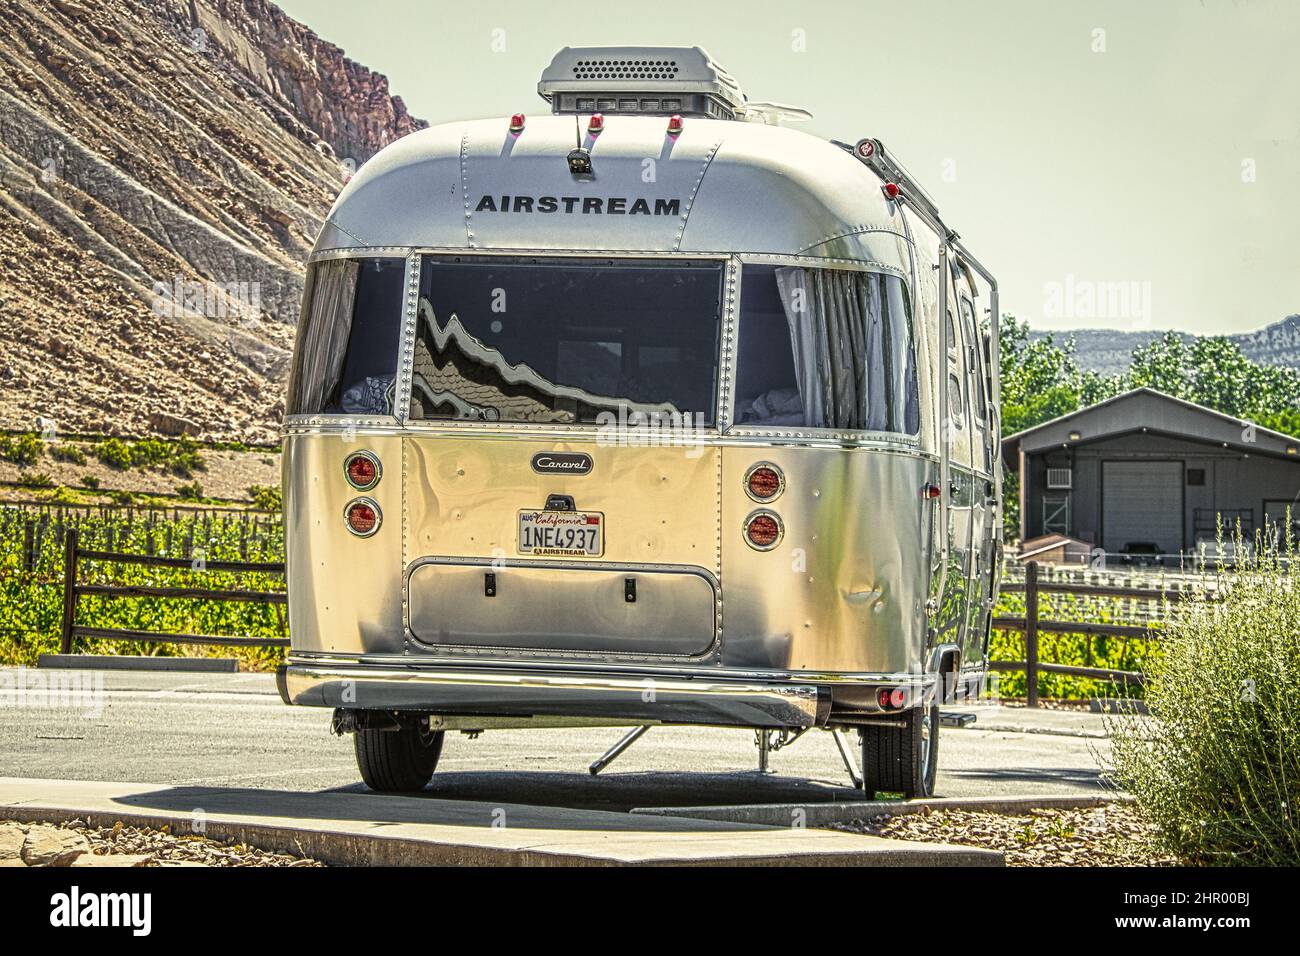 2021 06 04 Grand Junction Colorado USA - rimorchio per camper Airstream parcheggiato su cemento con vigneti e mesa d'uva e fienile dietro di esso. Foto Stock